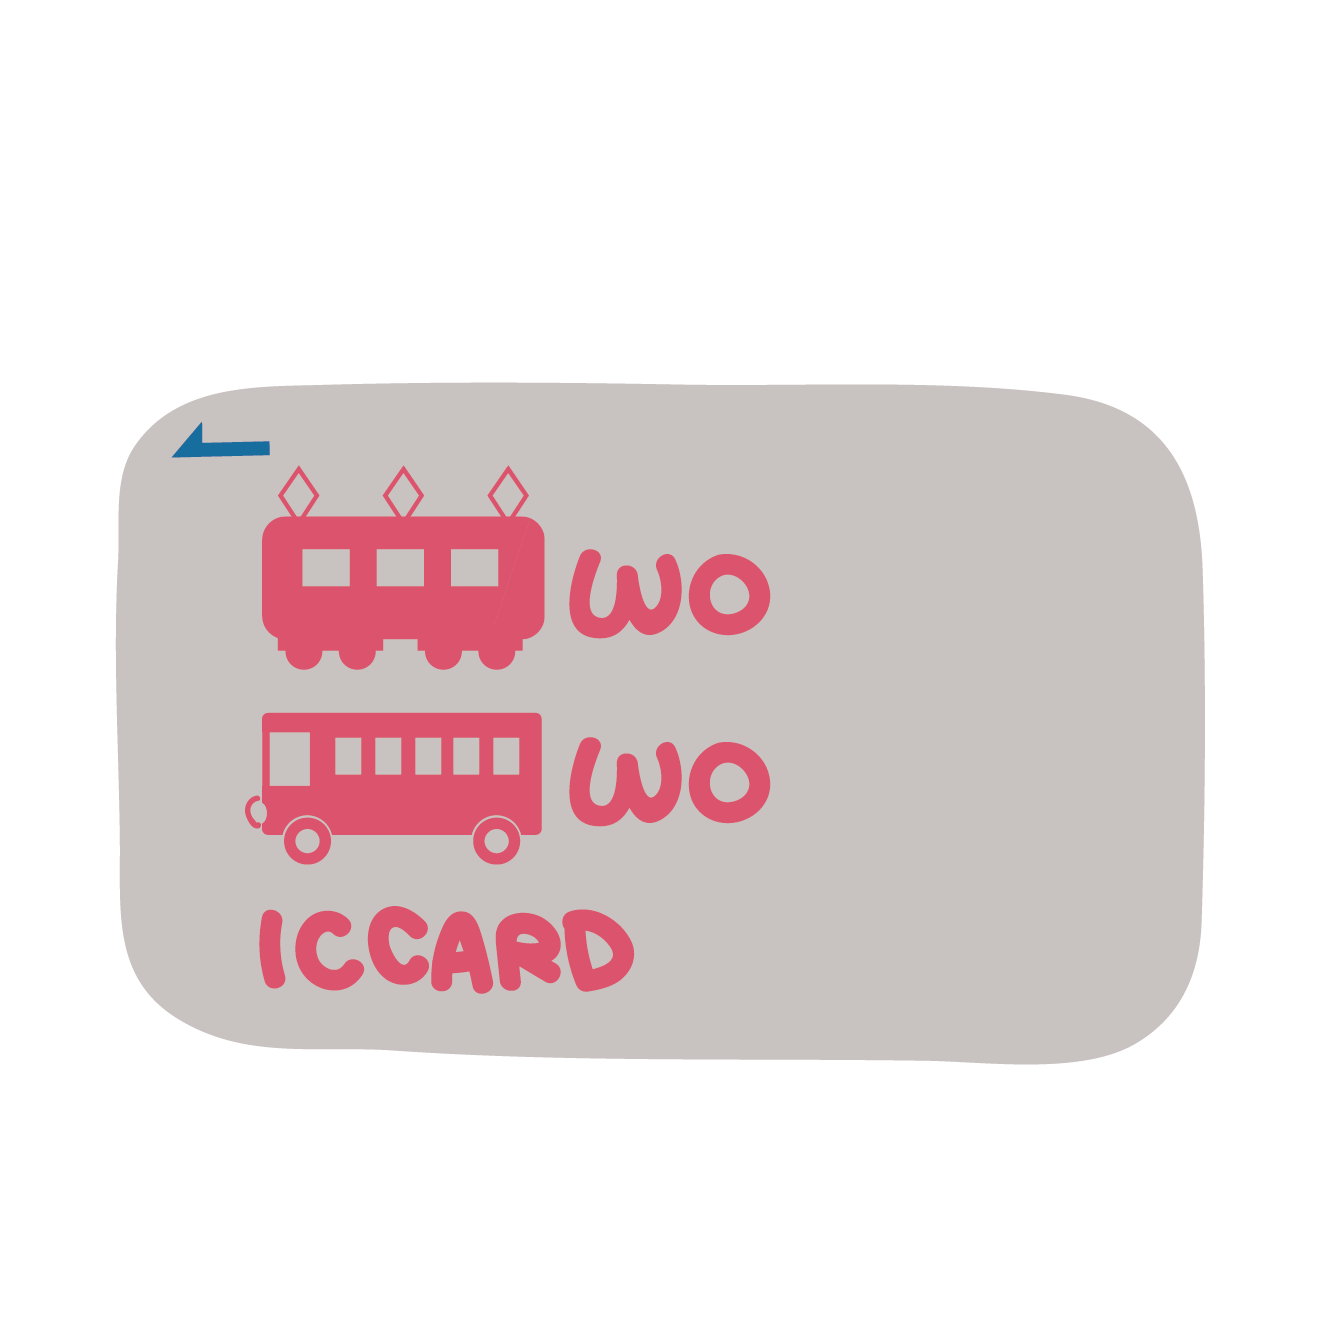 私鉄 地下鉄のic Card Icカード のイラスト 商用フリー 無料 のイラスト素材なら イラストマンション